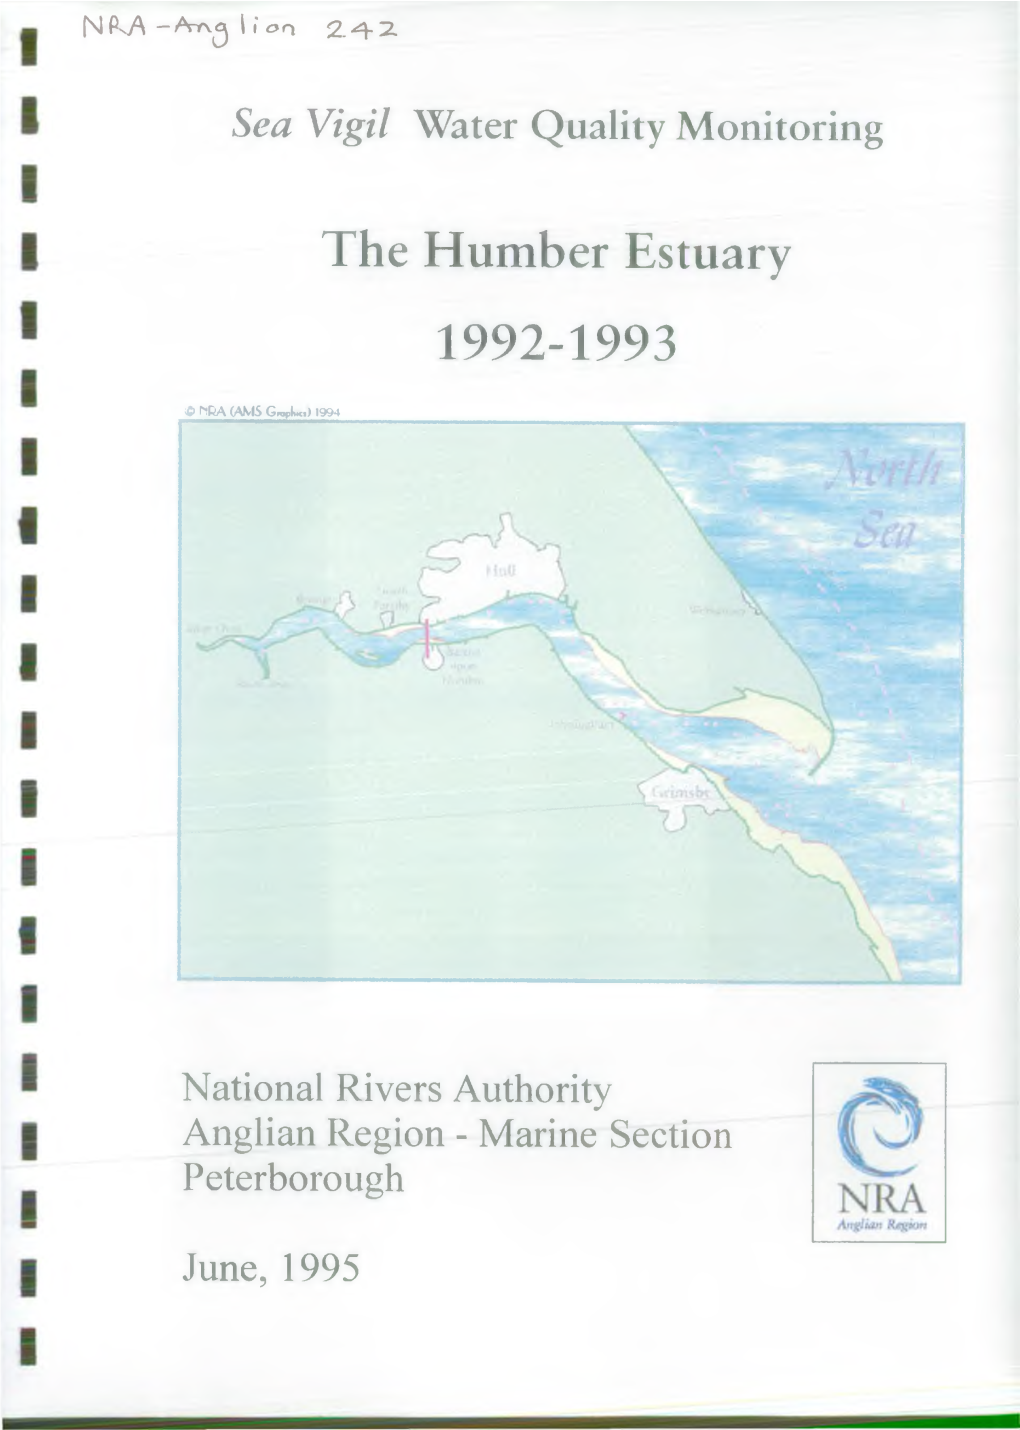 The Humber Estuary 1992-1993